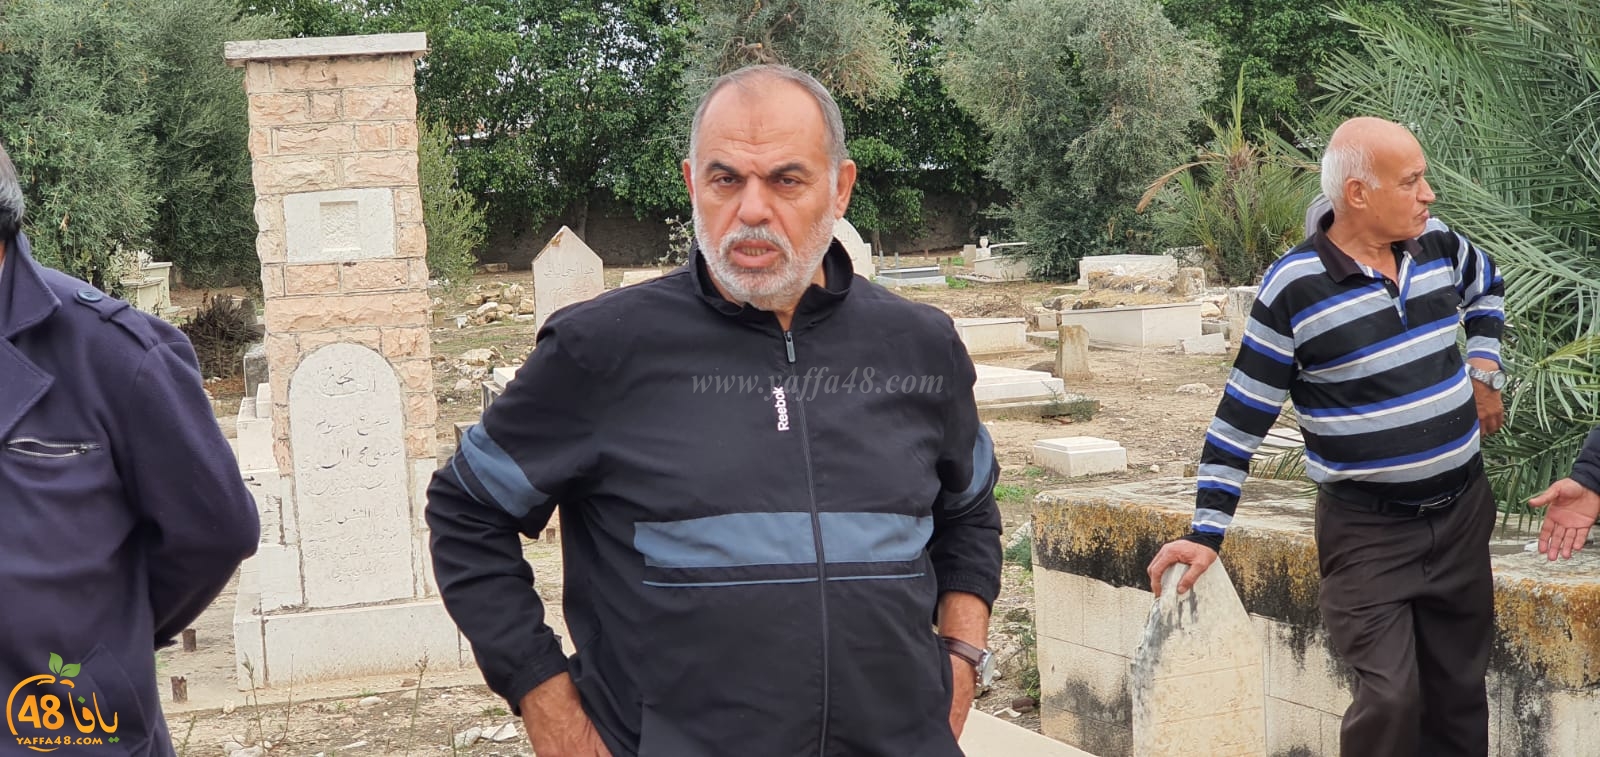 اللد: الحاج منير ذيابات أبو وسام (78 عاماً) في ذمة الله 